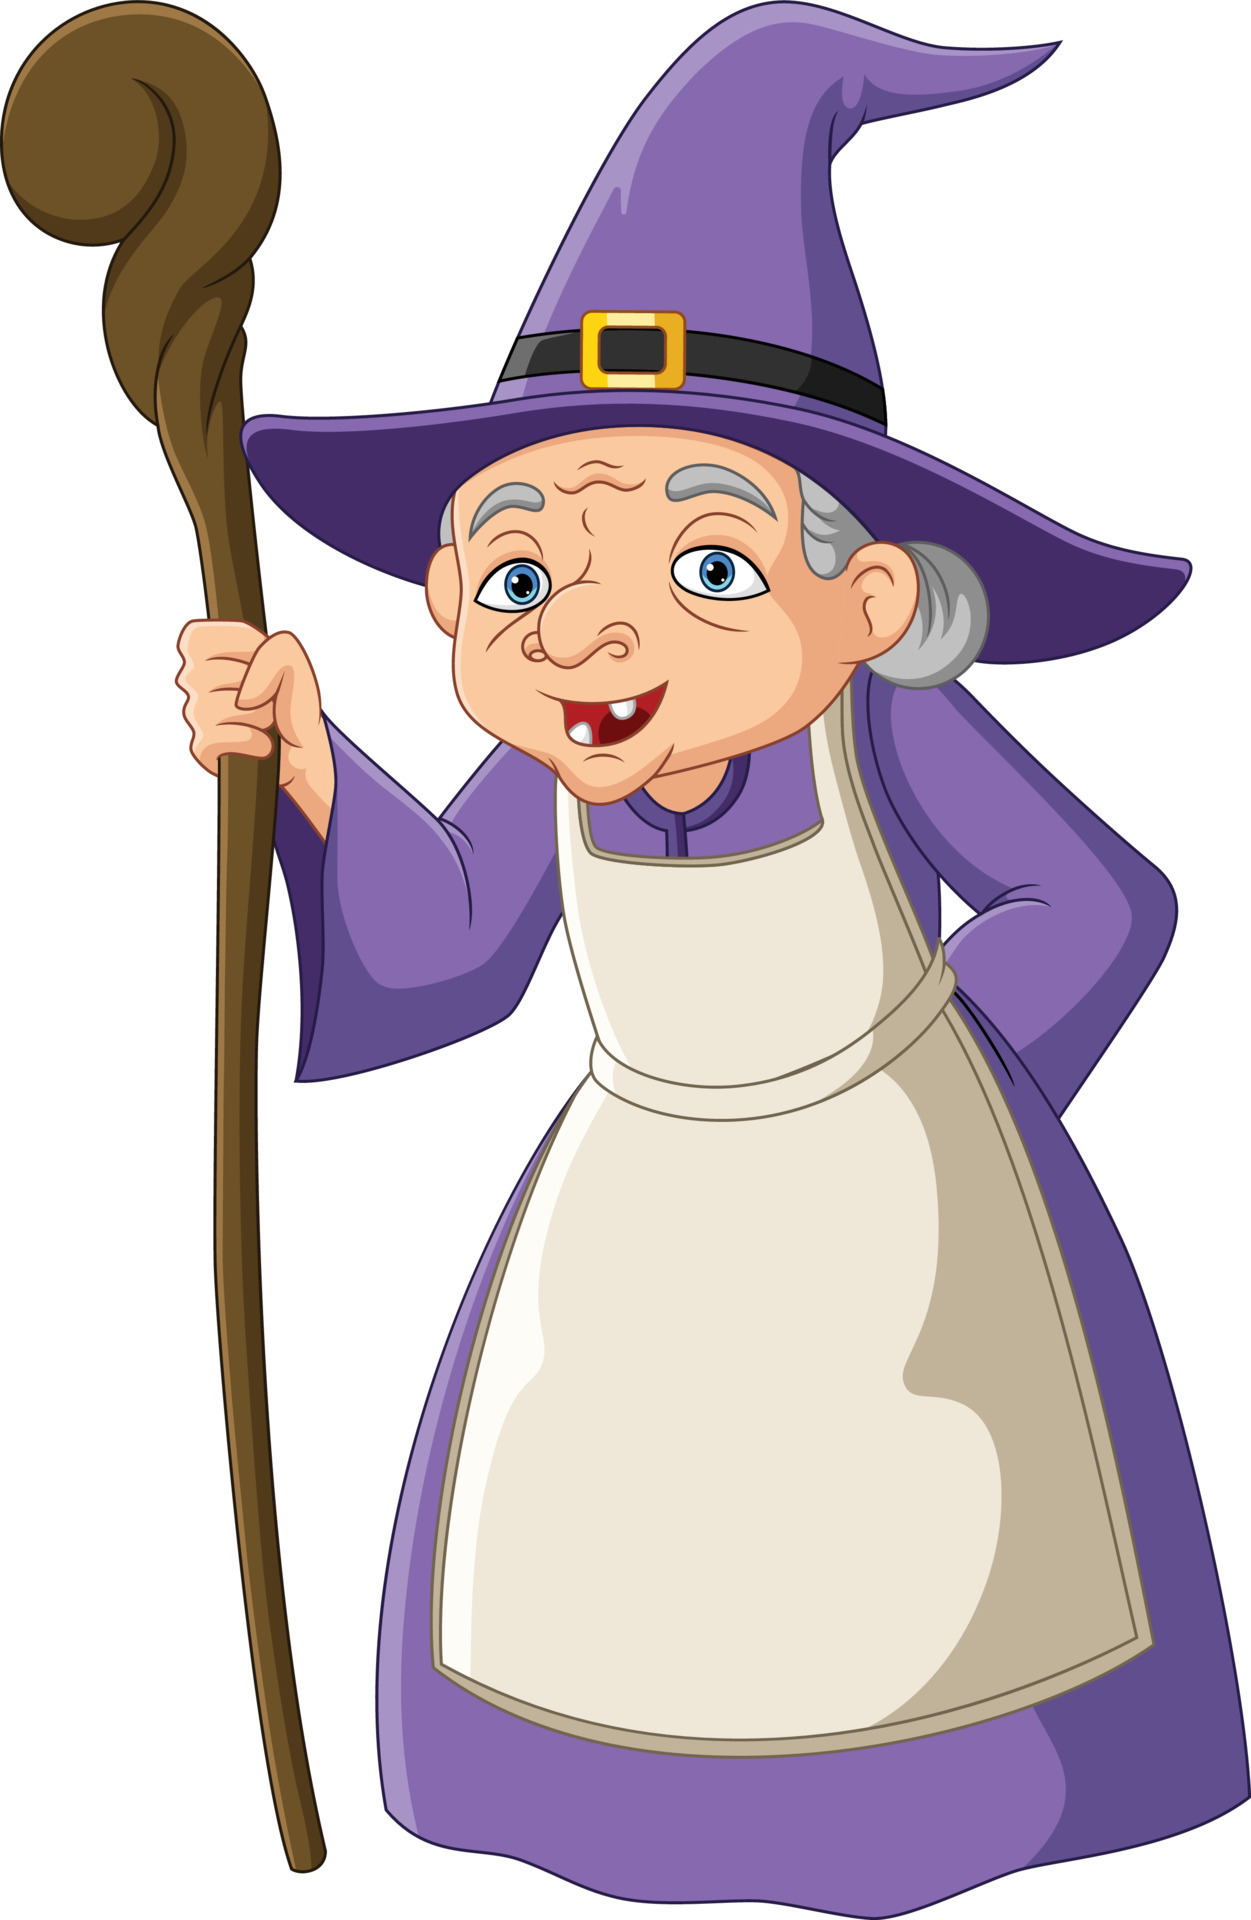 Velho personagem de desenho animado de cara de bruxa